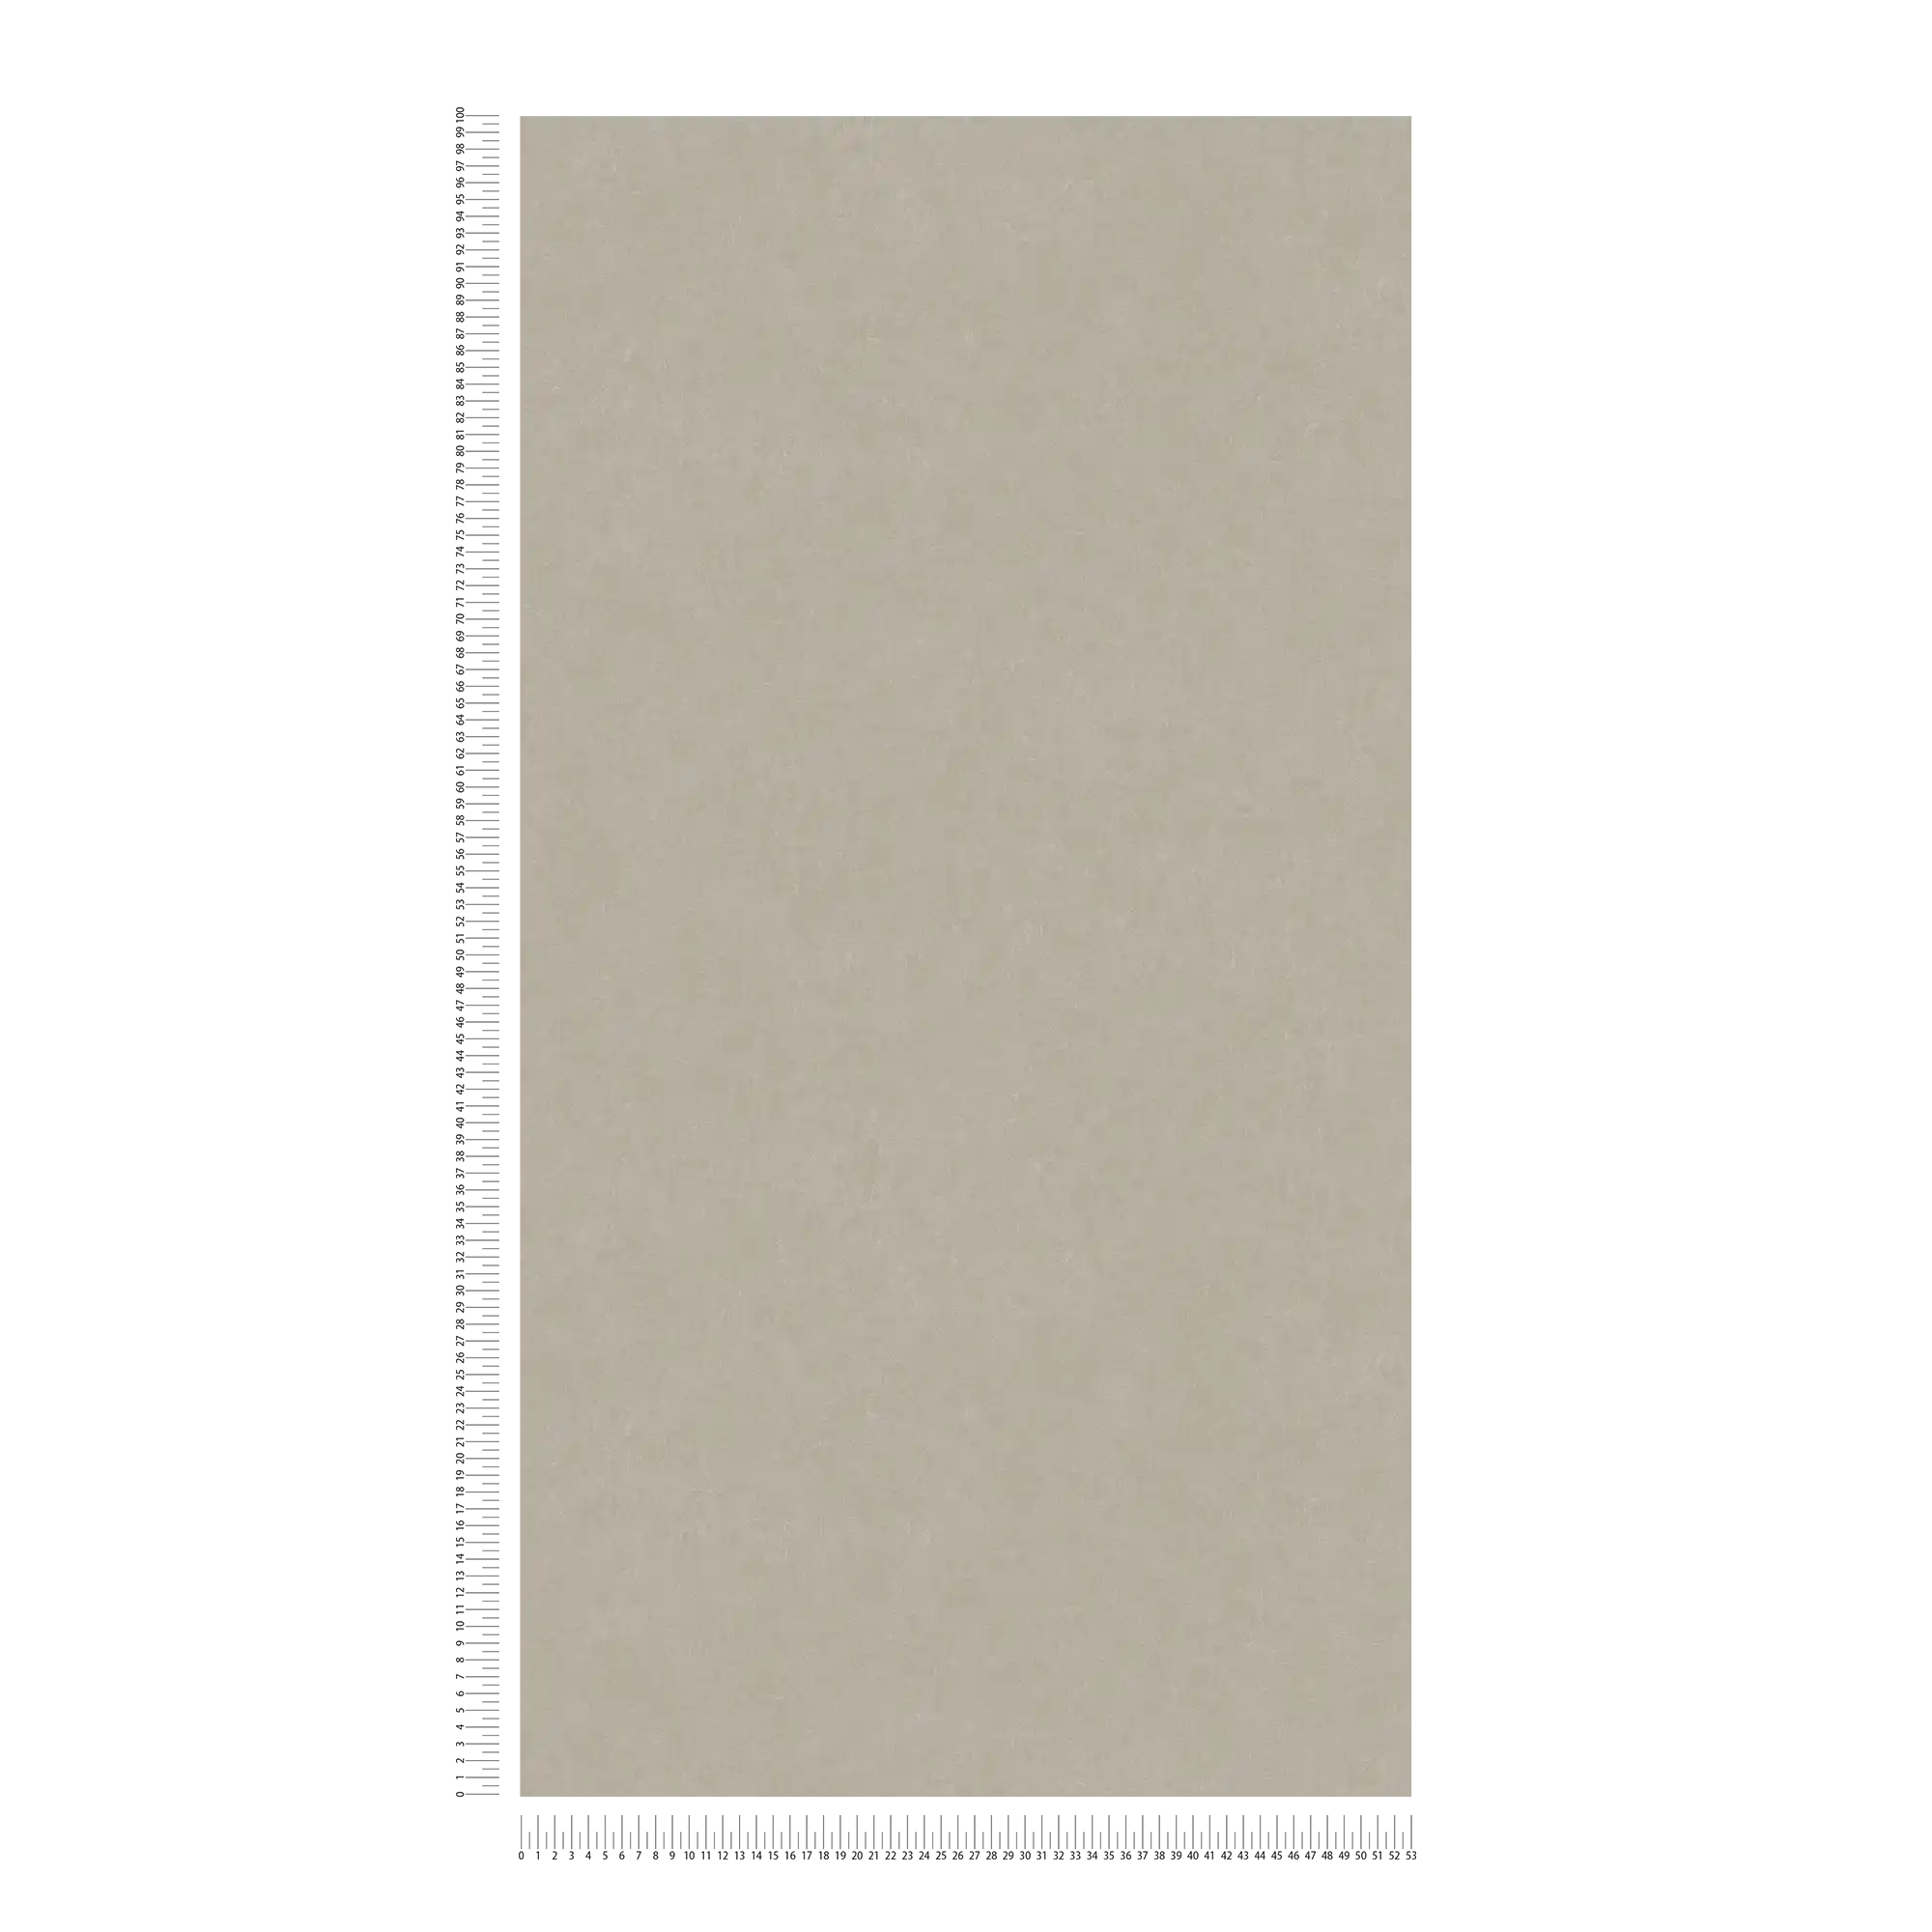             Papier peint gris-beige uni avec motif structuré
        